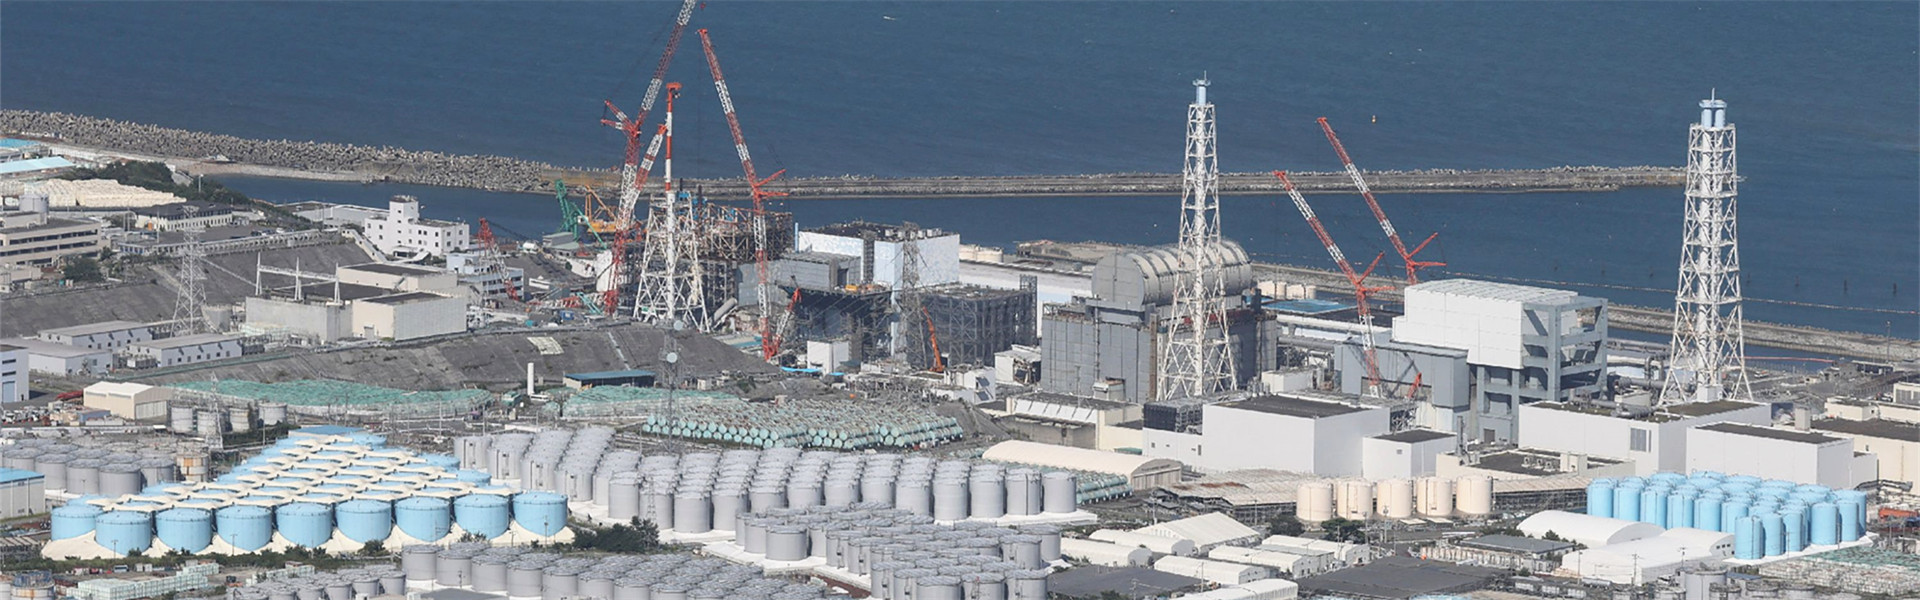 福岛第一核电站发生供电系统事故，我驻日使馆发声